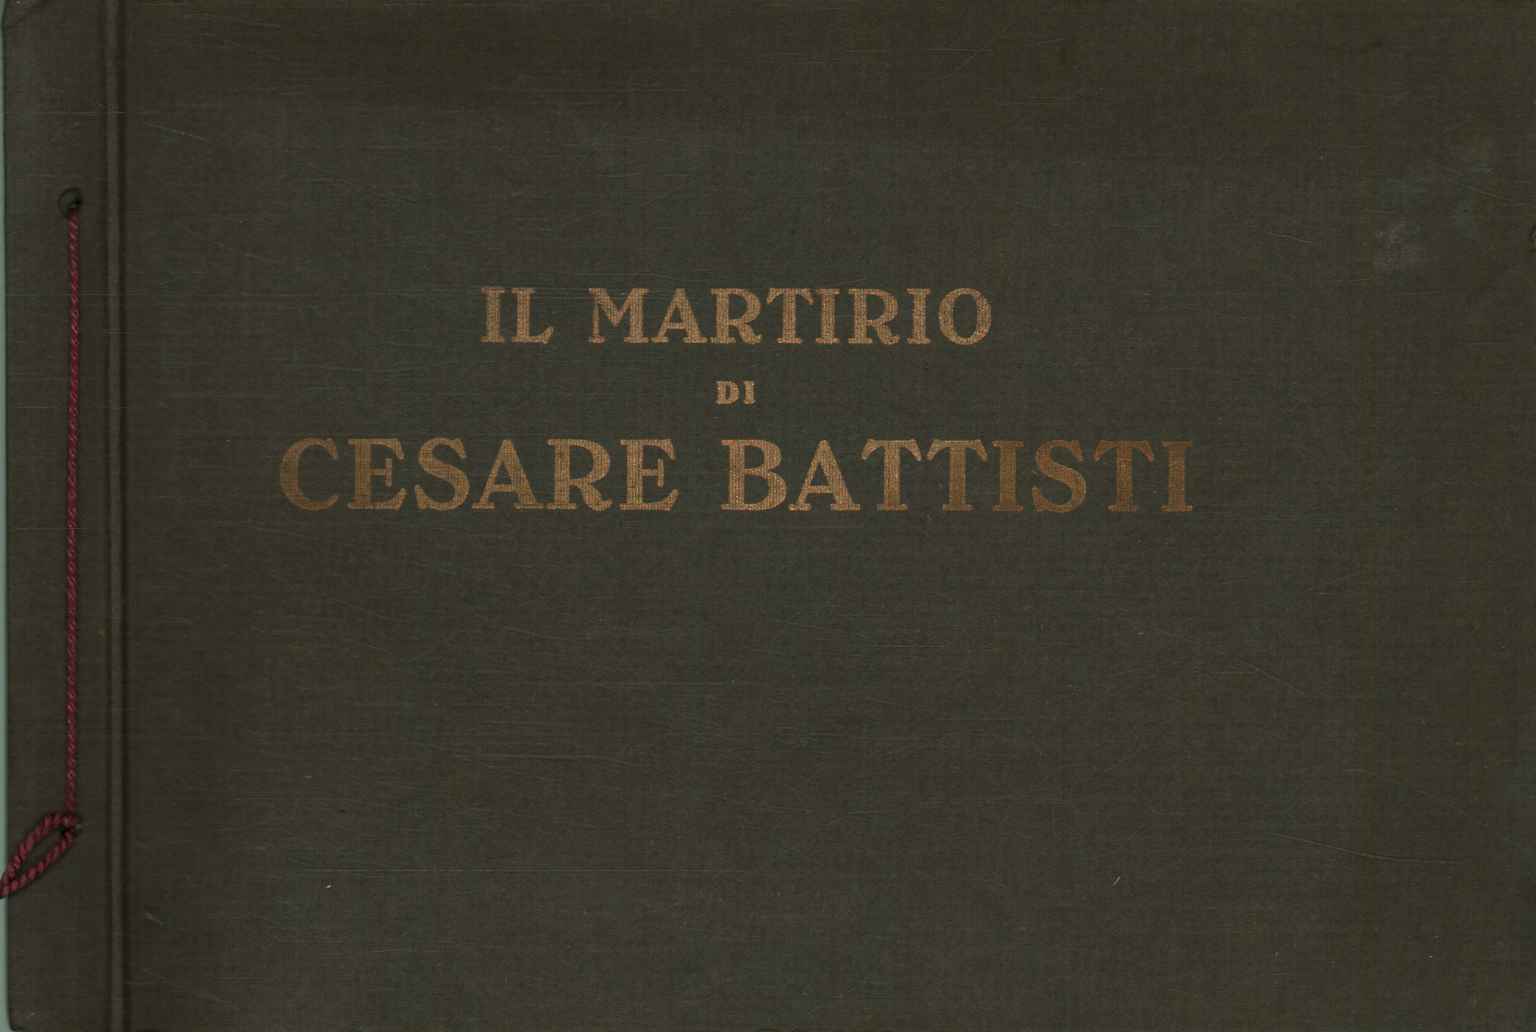 Das Martyrium von Cesare Battisti